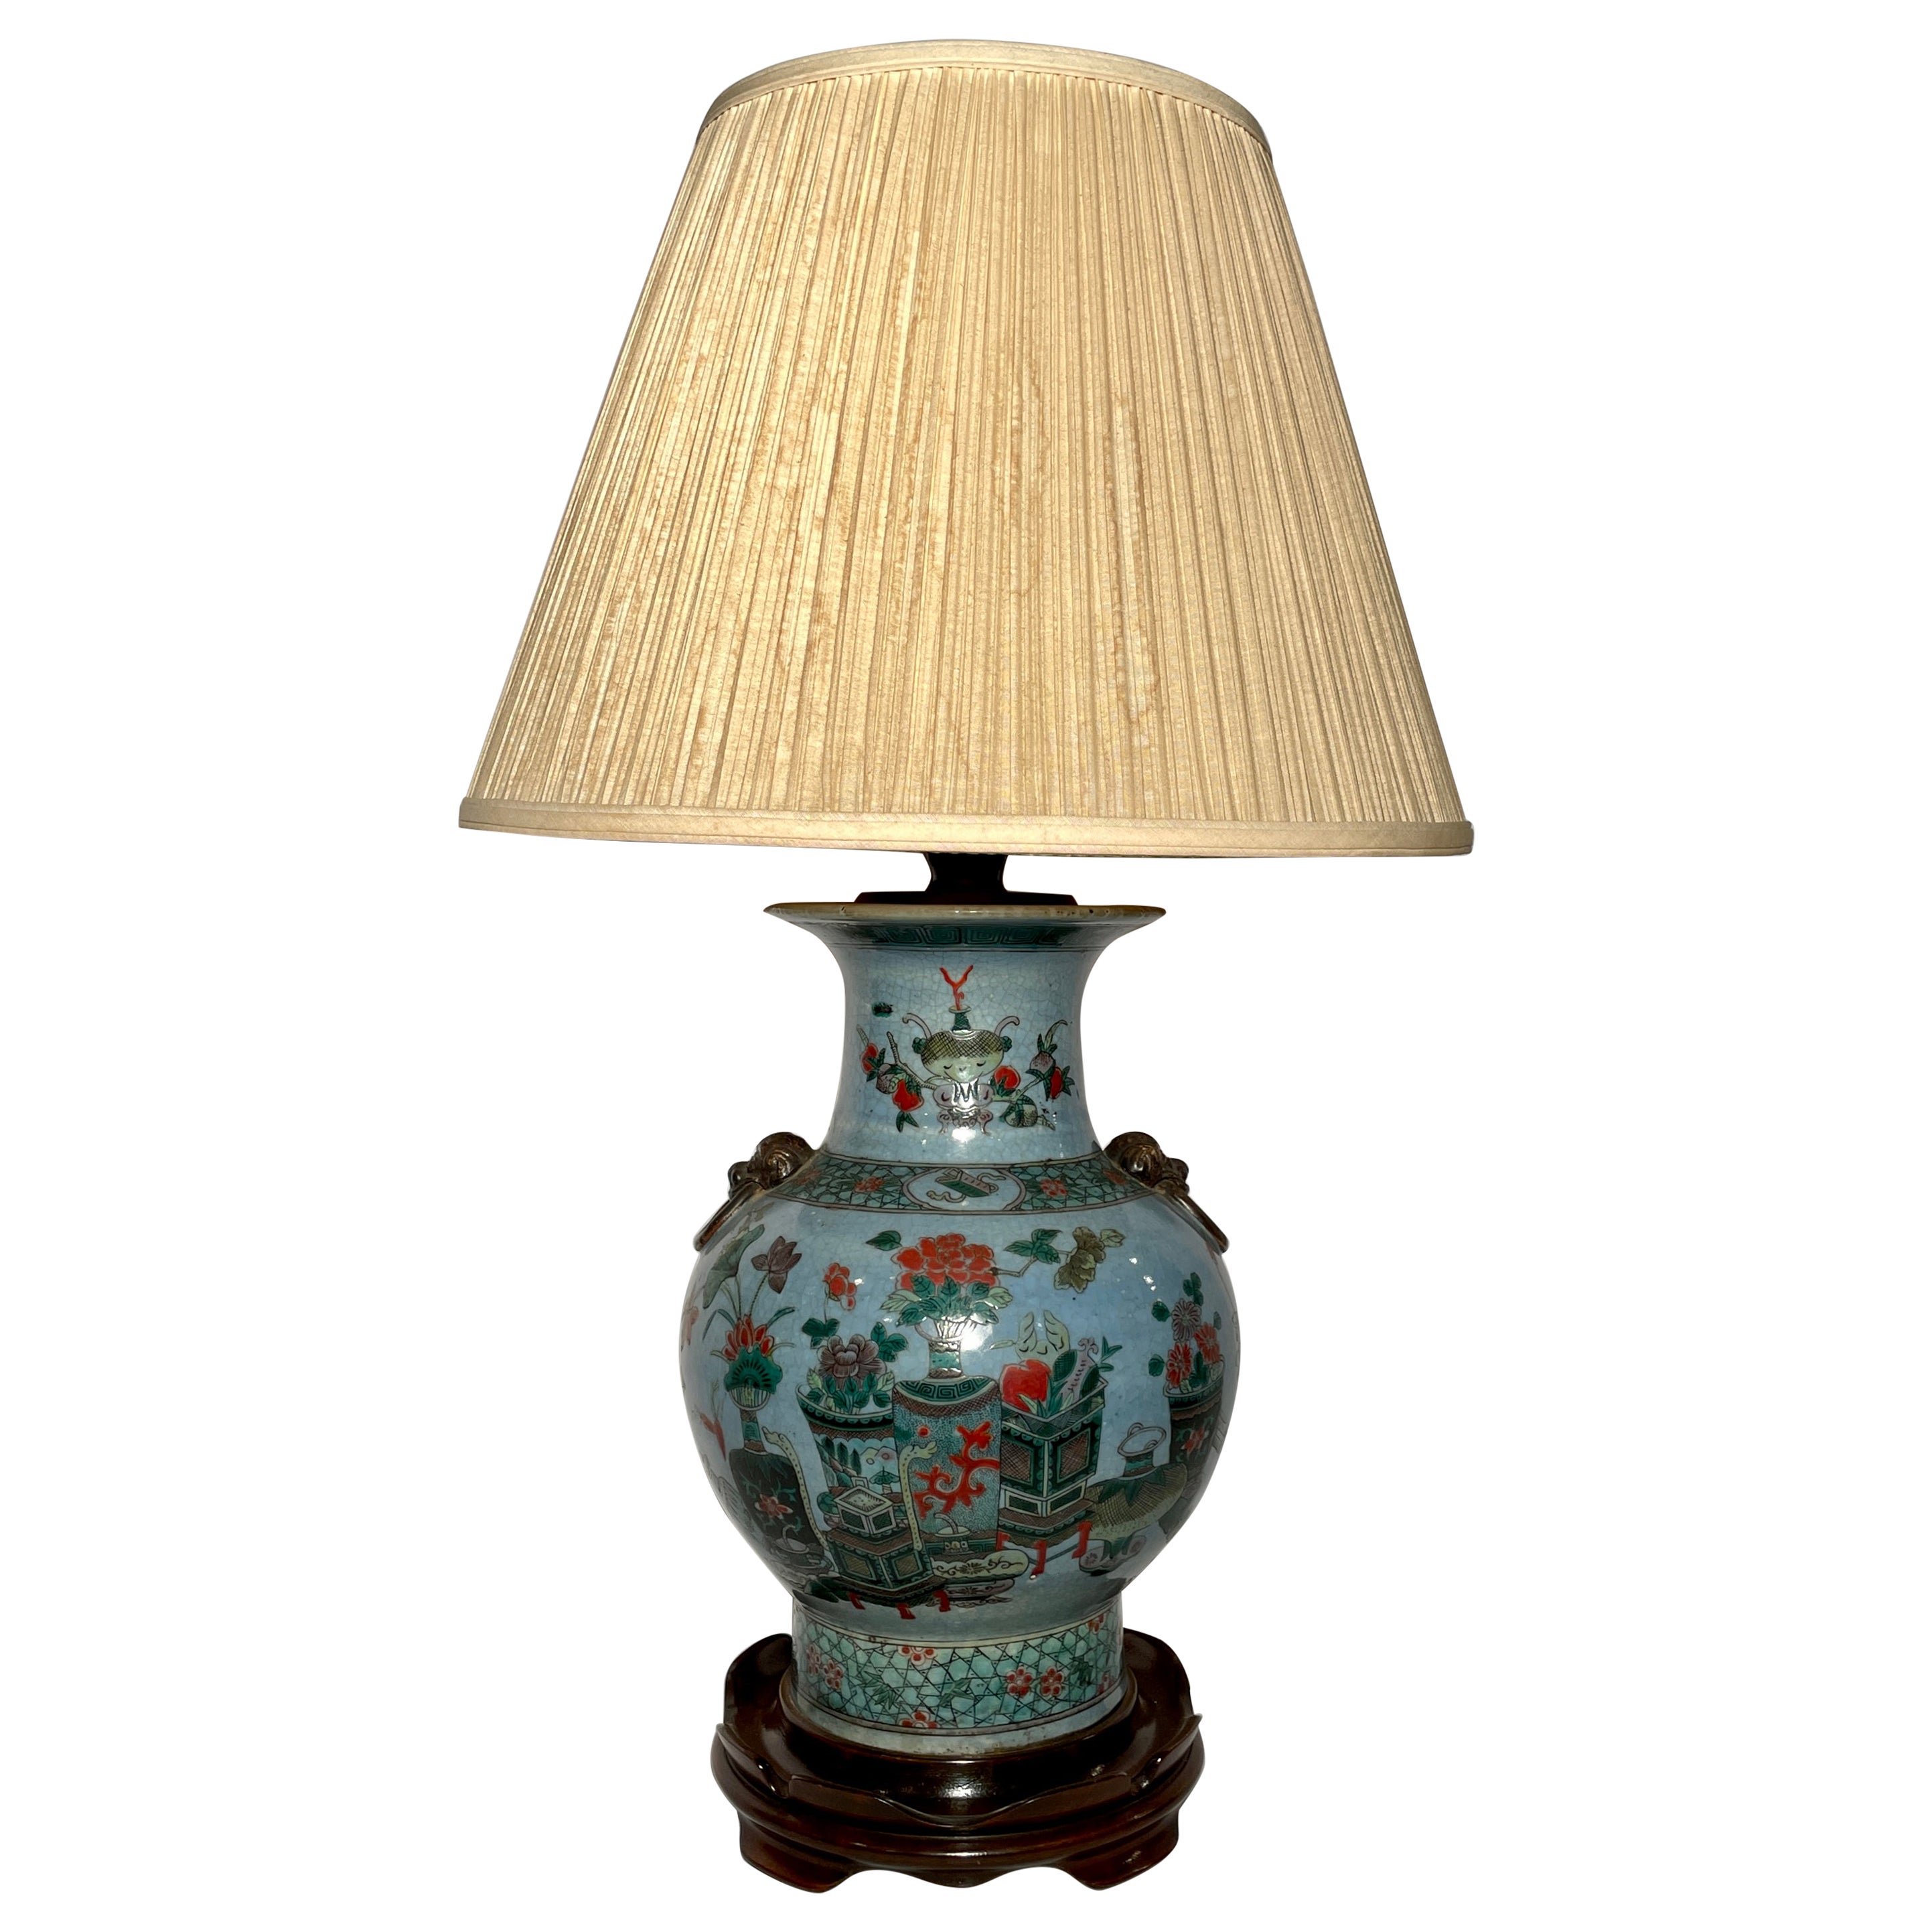 Vase chinois ancien converti en lampe sur socle en acajou fait sur mesure